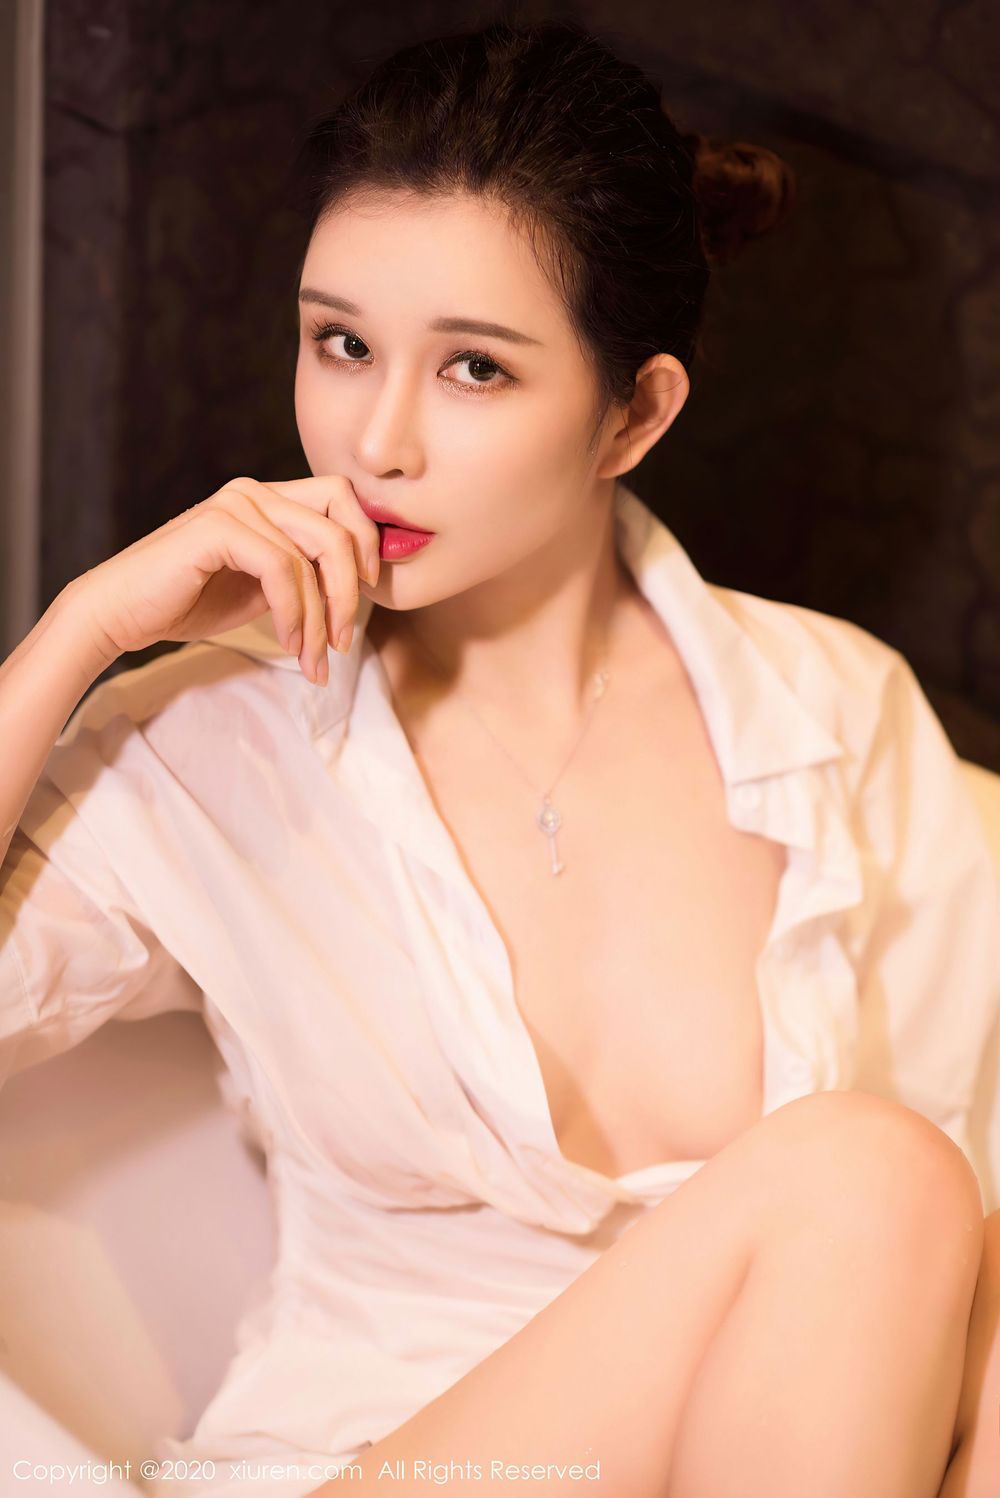 美女模特张雨萌 - 白衬衫+湿身诱惑系列浴室写真